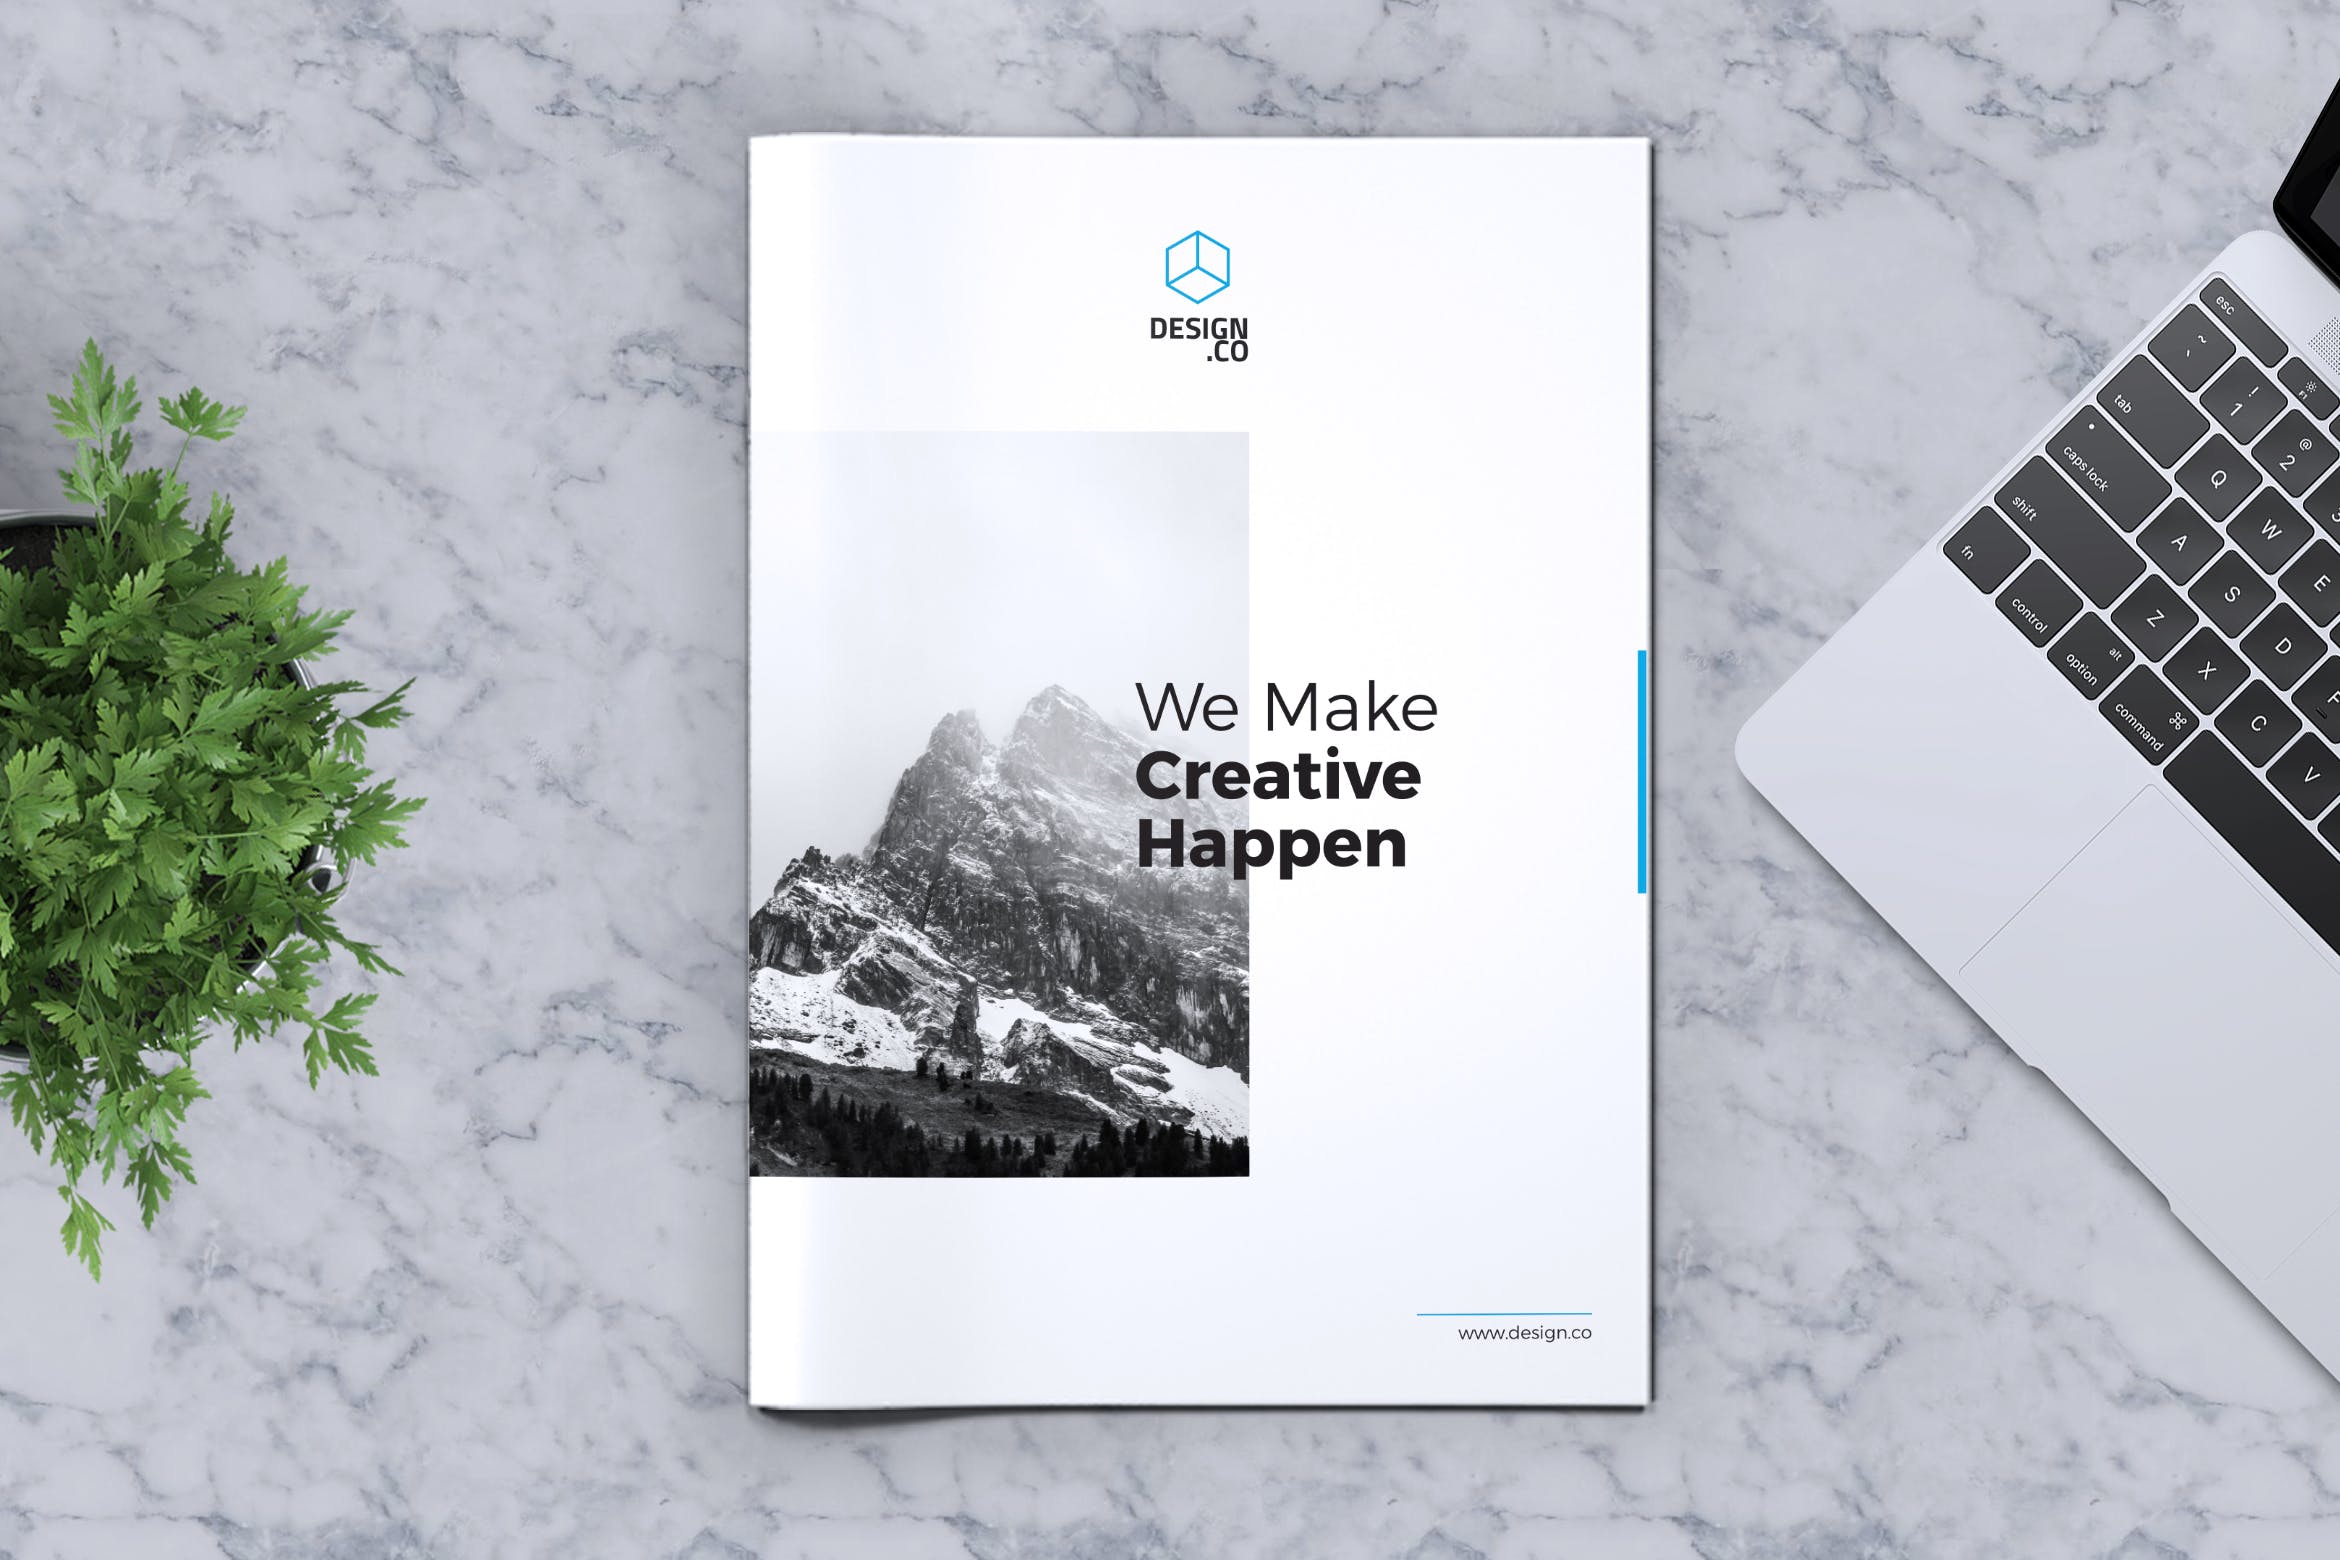 创意企业/产品/服务宣传画册设计模板v2 Creative Brochure Template Vol. 02插图